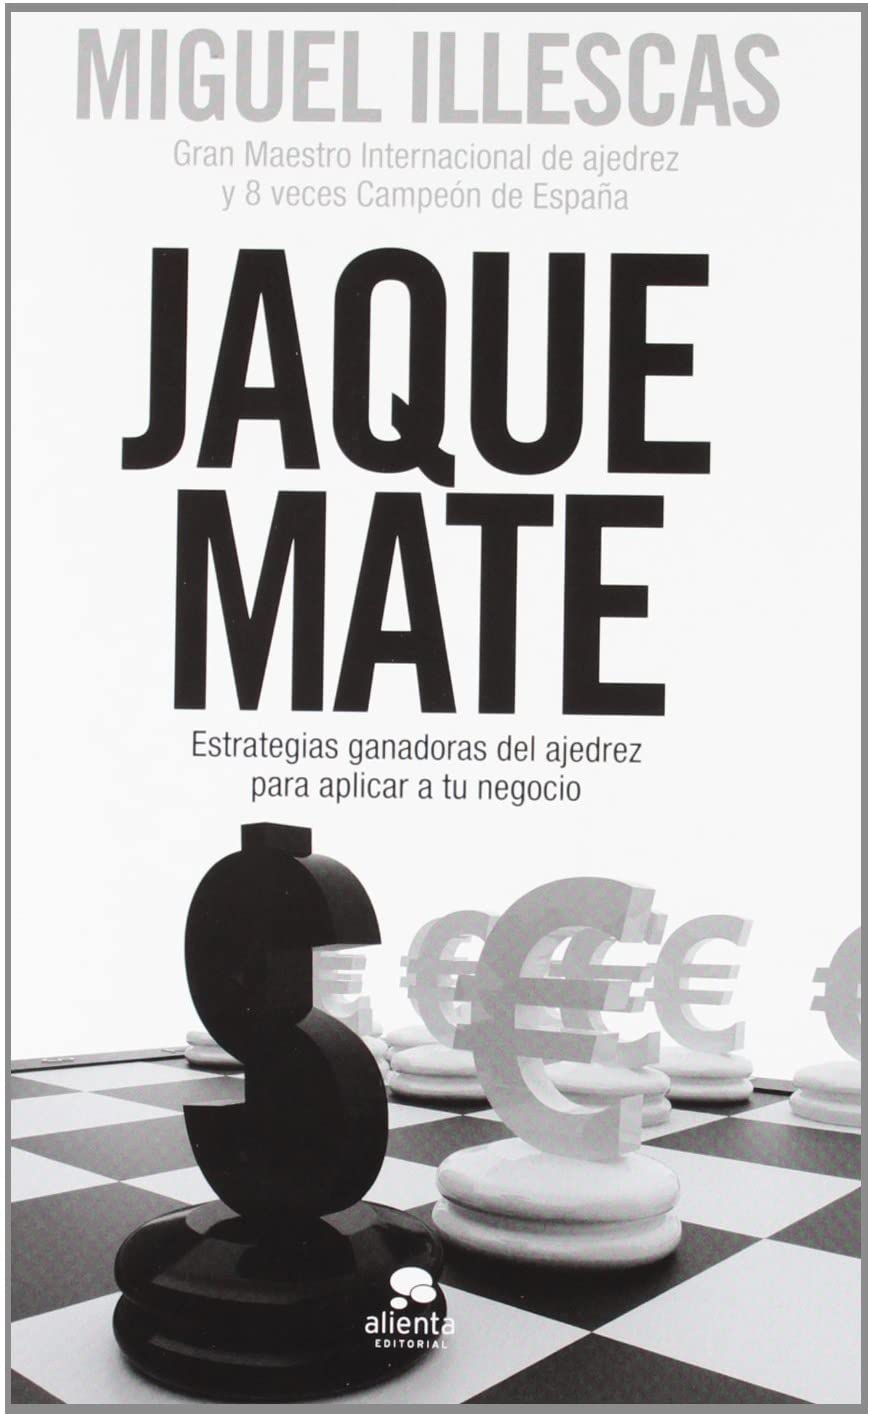 Jaque mate: Estrategias ganadoras del ajedrez para aplicar a tu negocio (Spanish Edition)